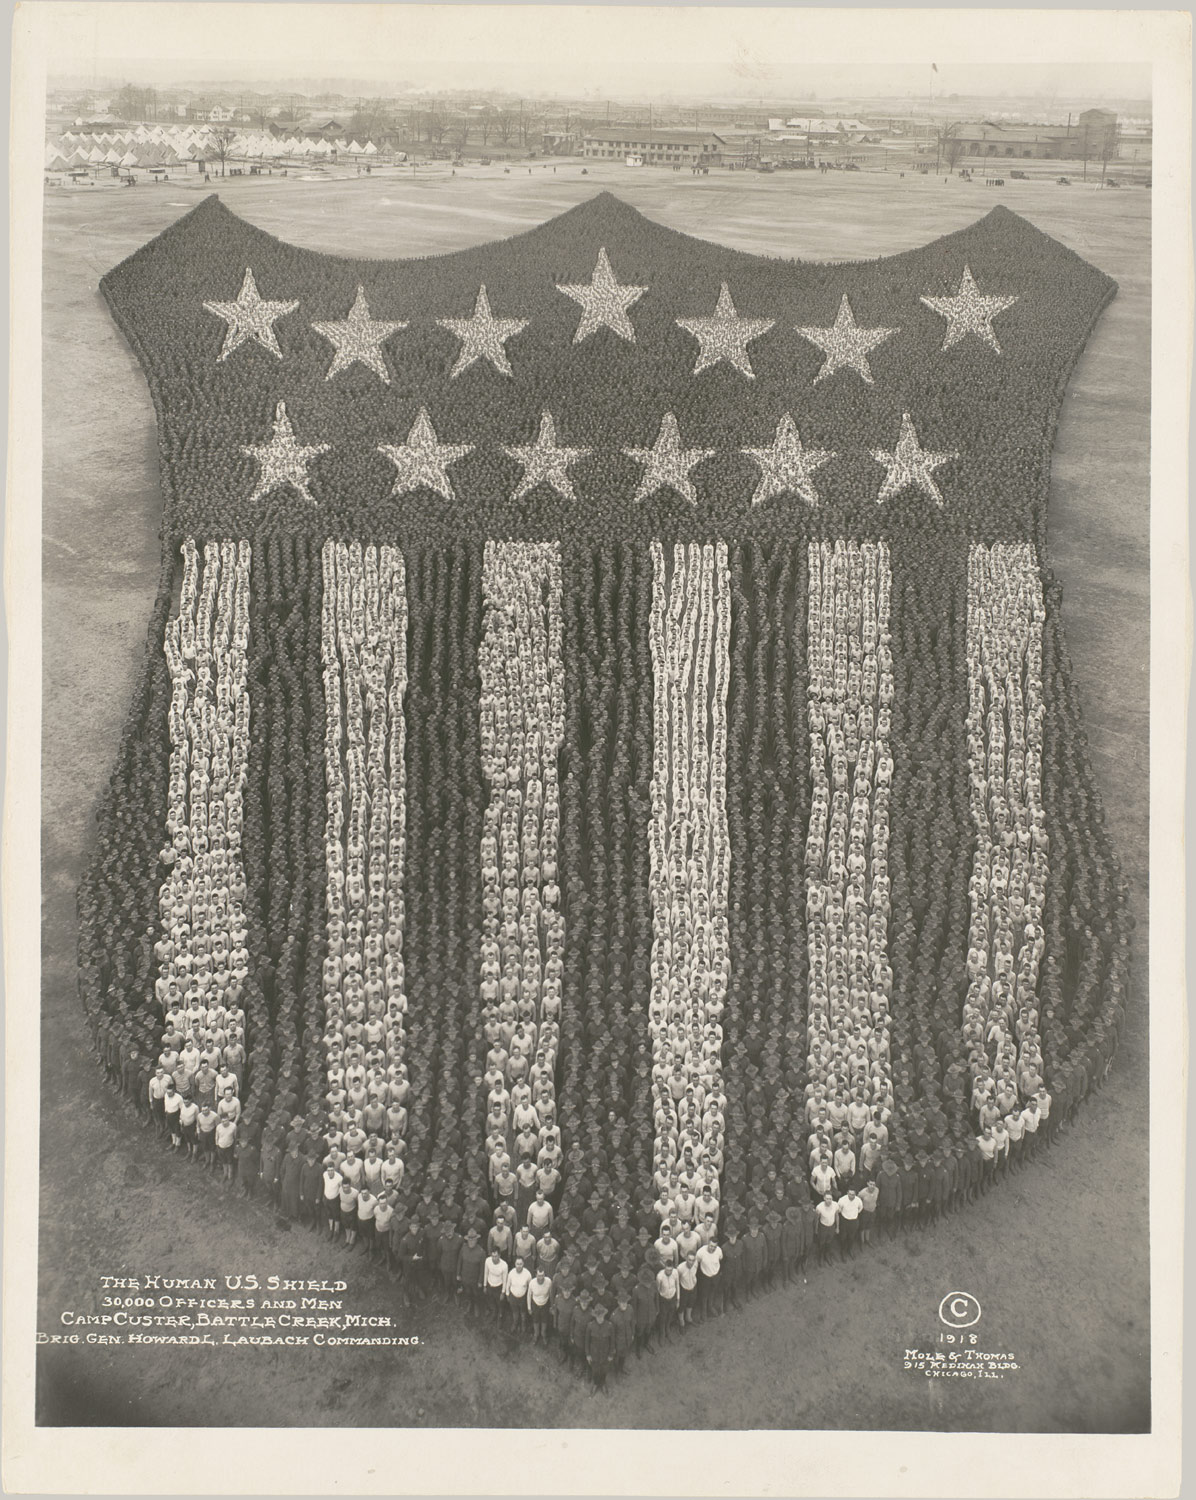 USA Shield